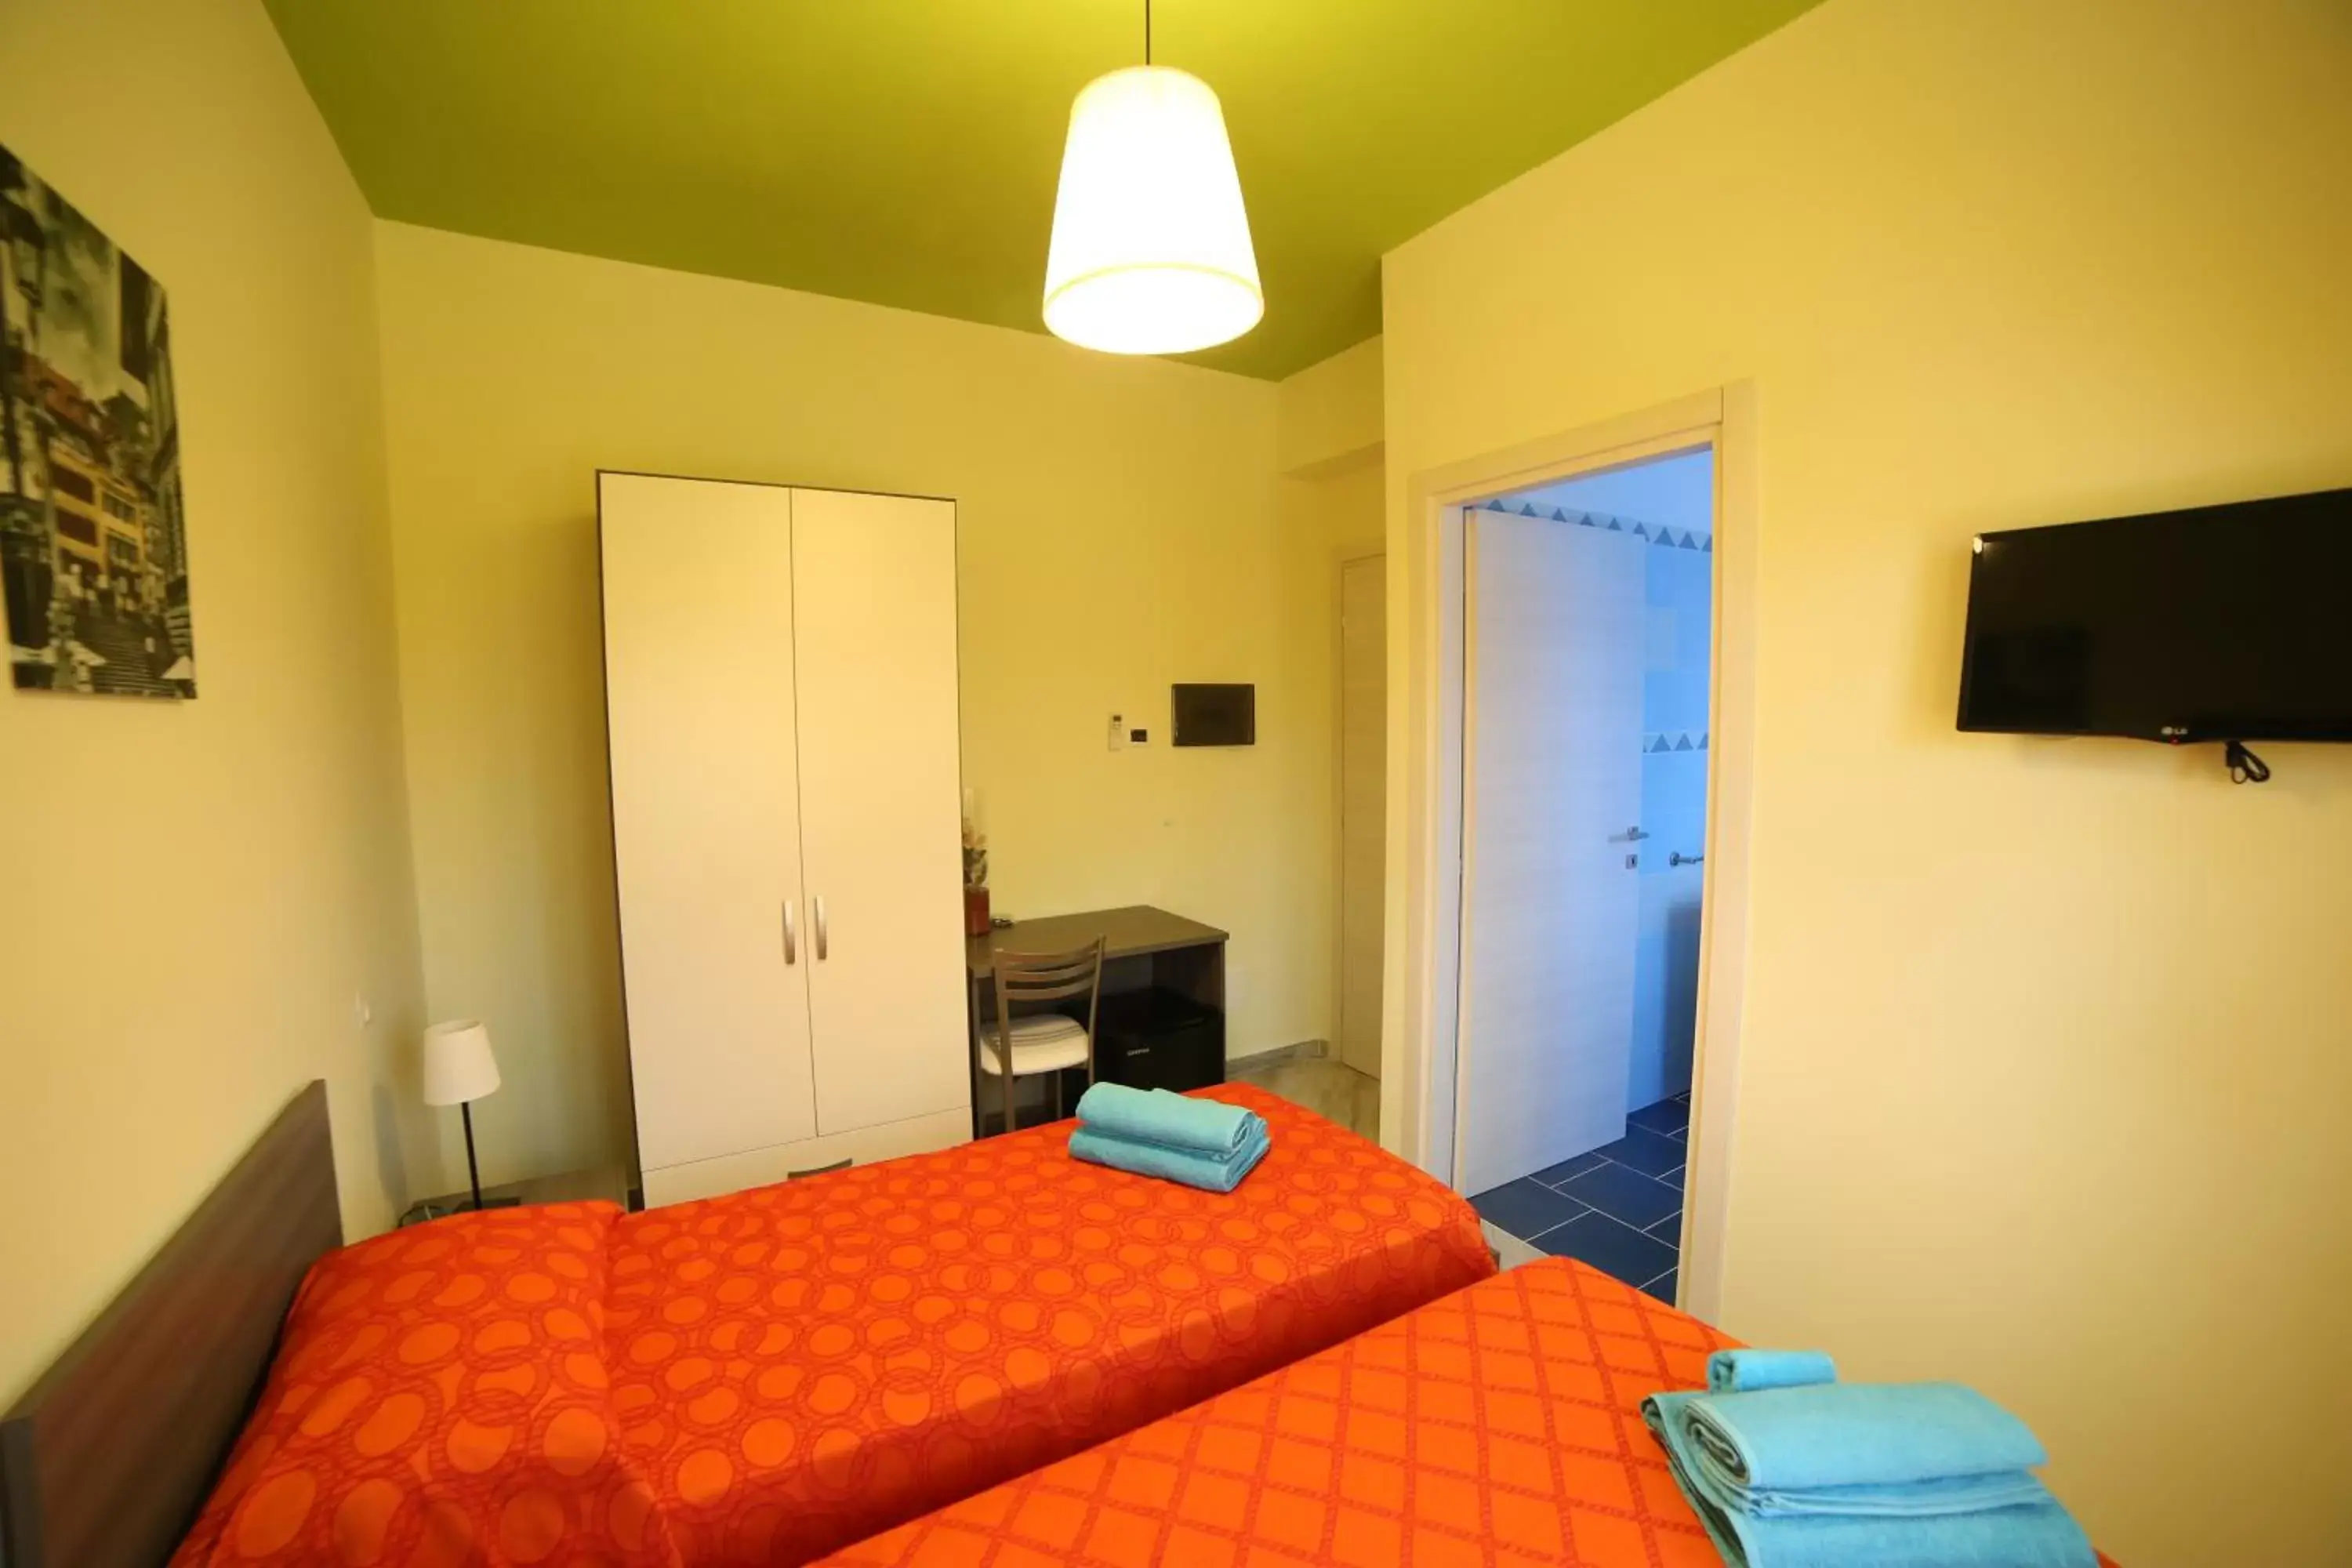 Bedroom, Room Photo in Parco Carrara